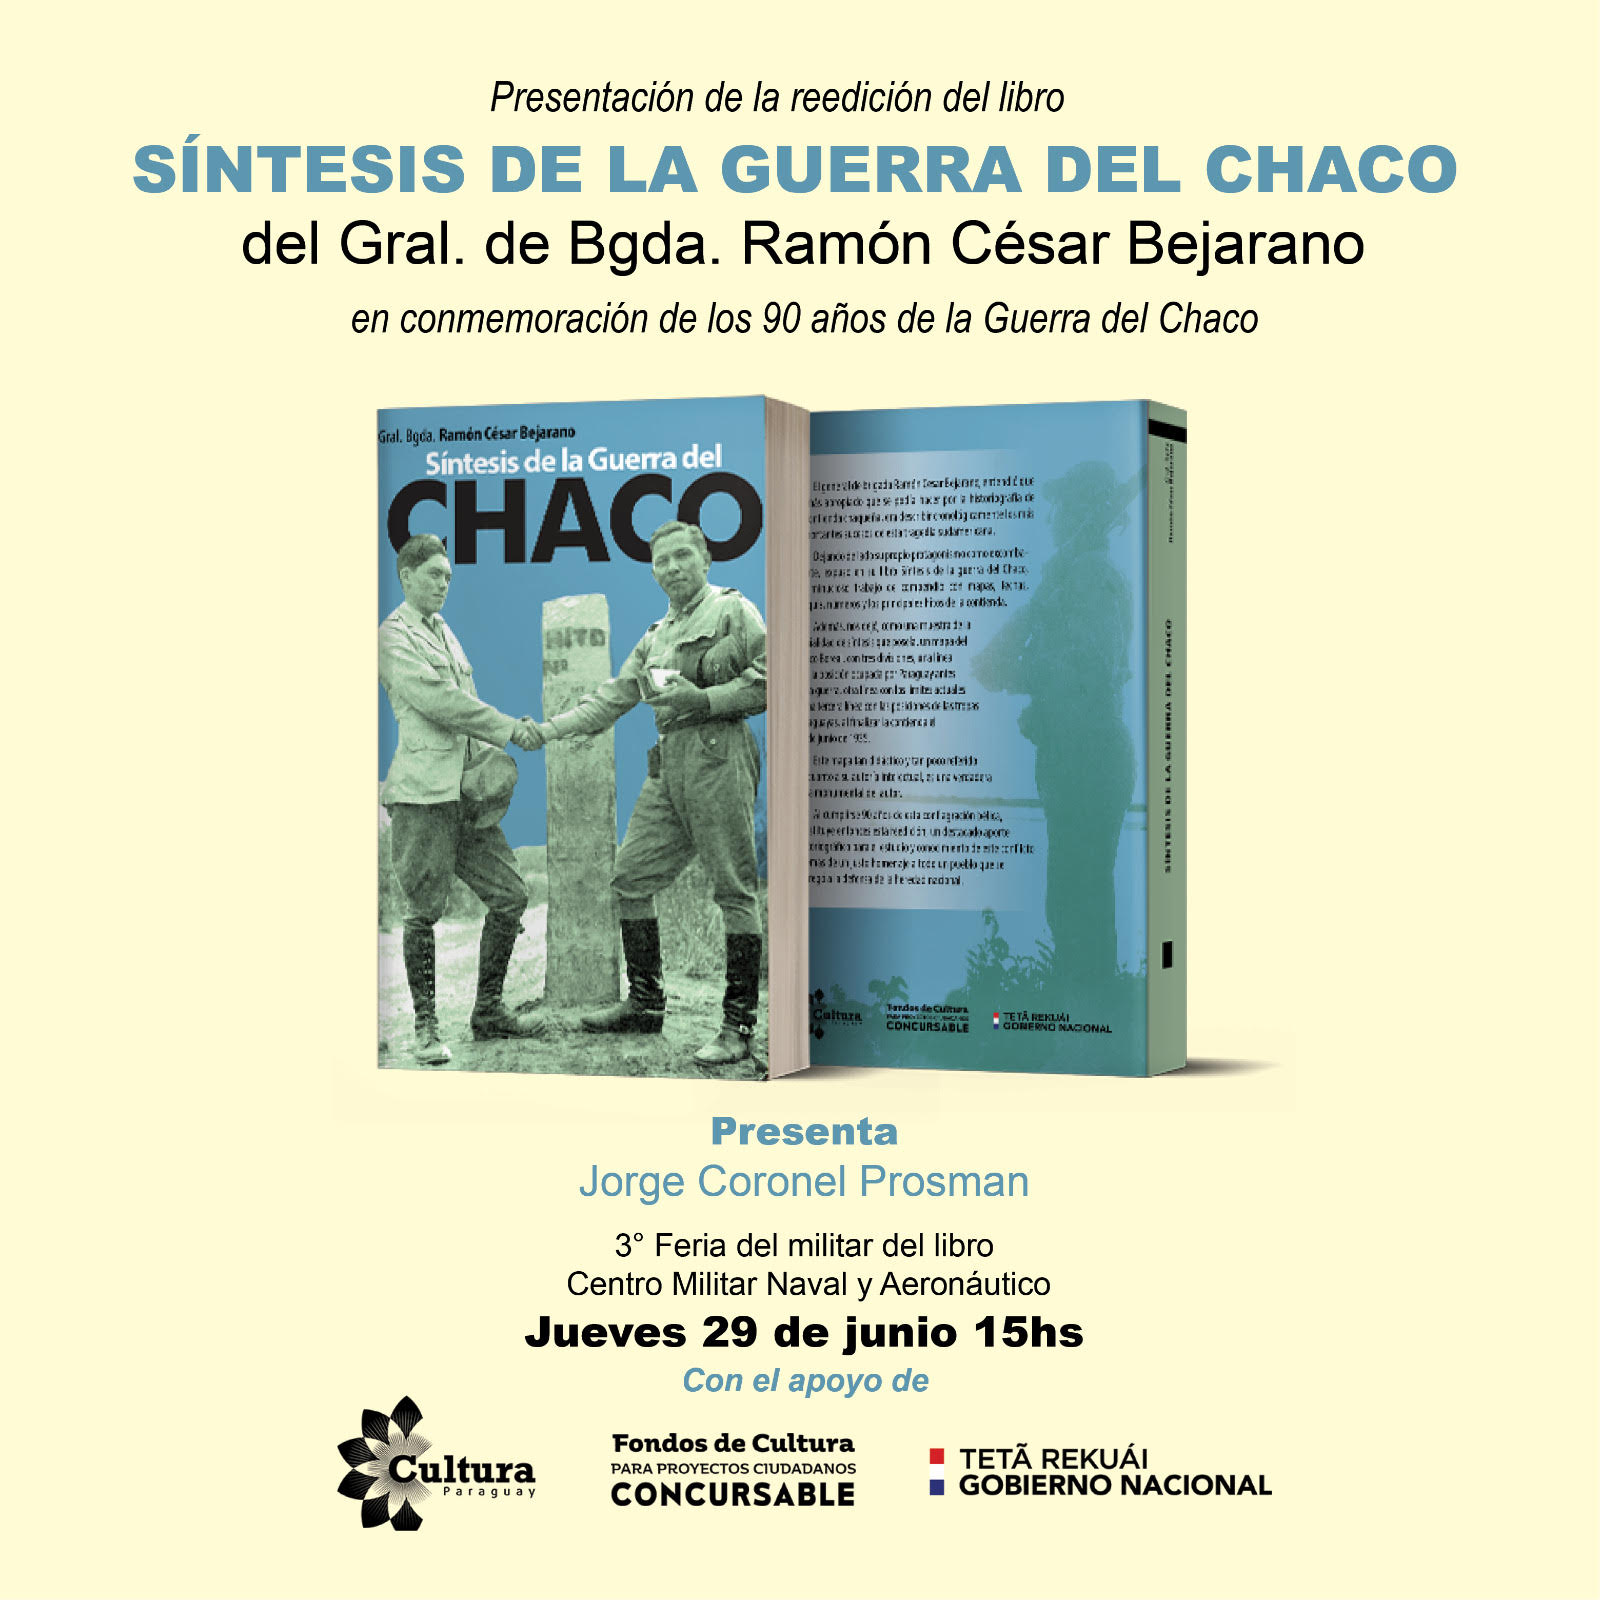 Presentarán la reedición del libro “Síntesis de la Guerra del Chaco”, adjudicada con los Fondos de Cultura 2023 imagen